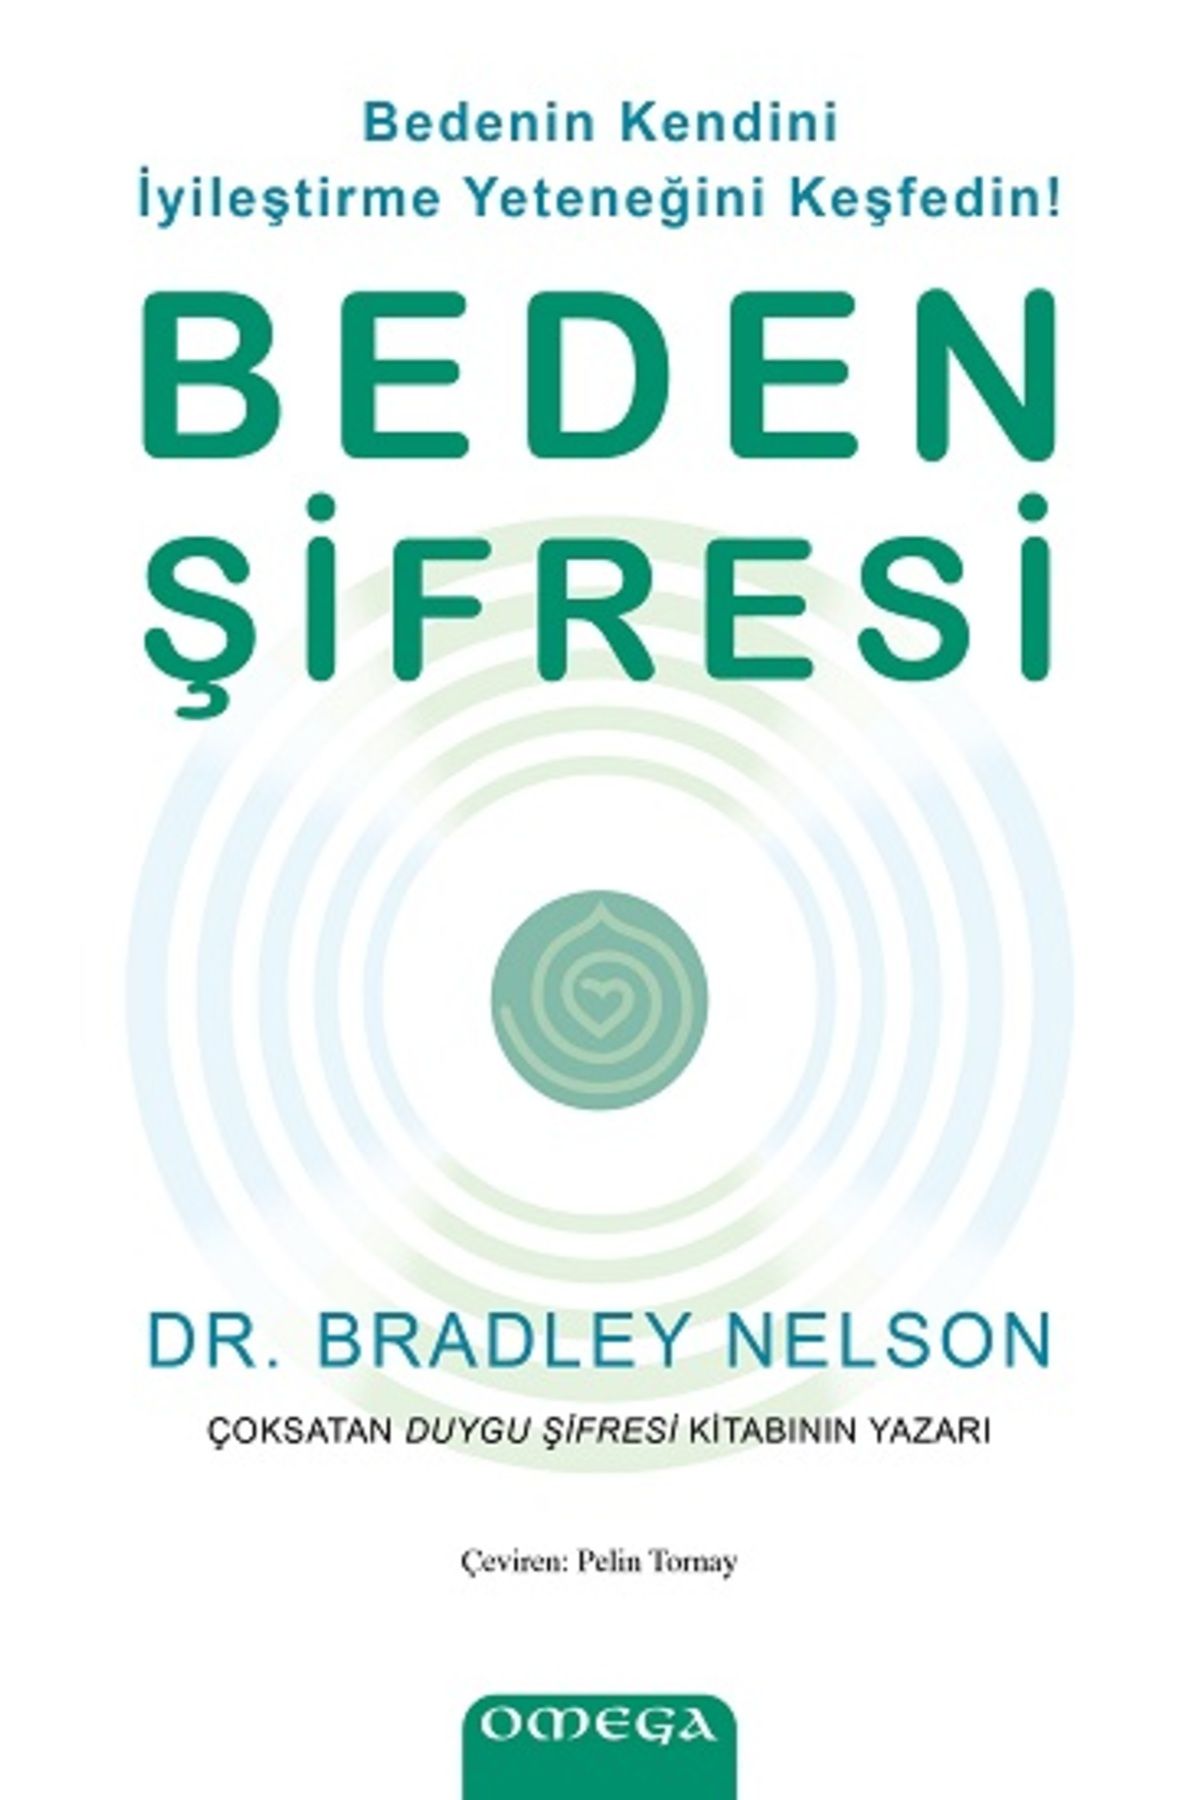 Omega Beden Şifresi / Bedenin Kendini İyileştirme Yeteneğini Keşfedin! kitabı - Bradley Nelson - Omega